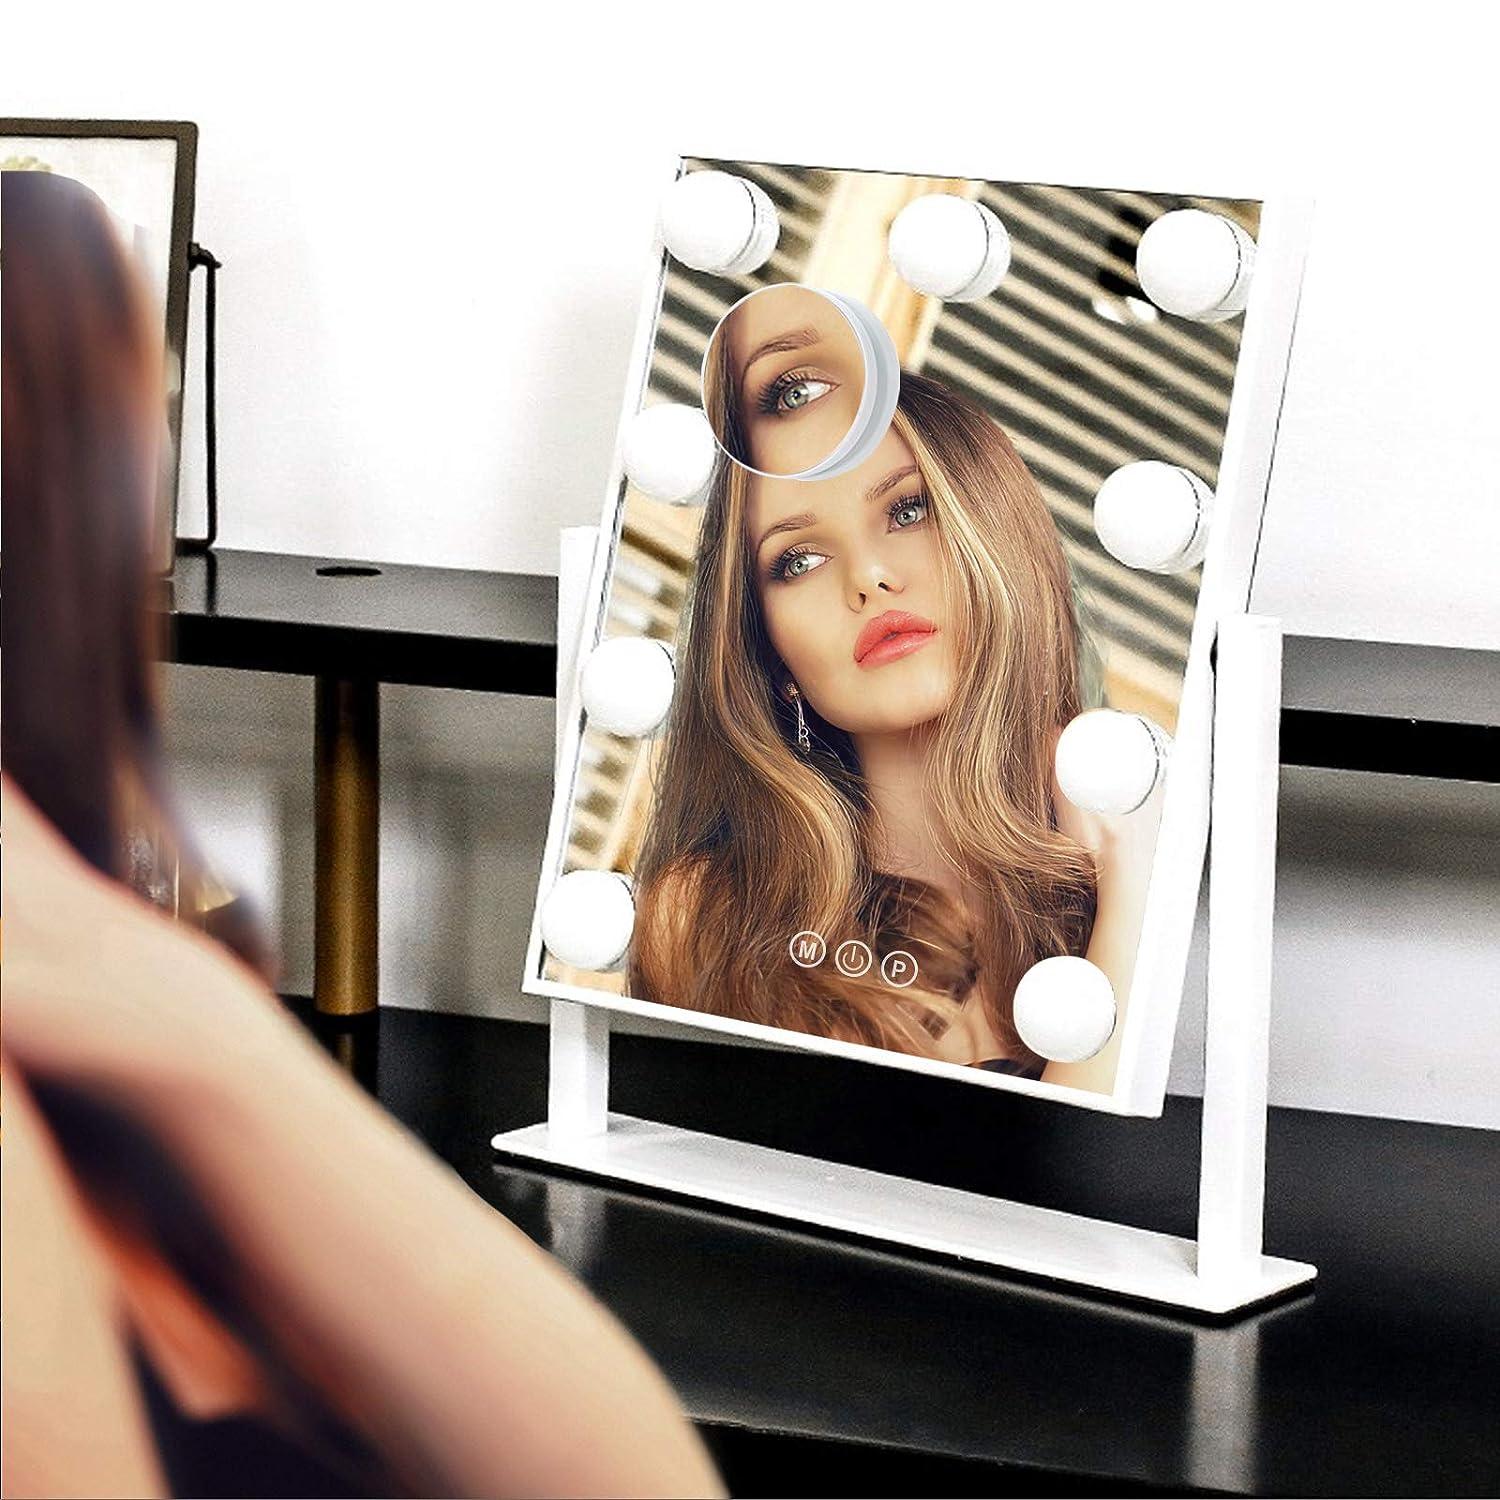 Espejo de maquillaje iluminado Hollywood, espejo de tocador con luces, diseño - VIRTUAL MUEBLES